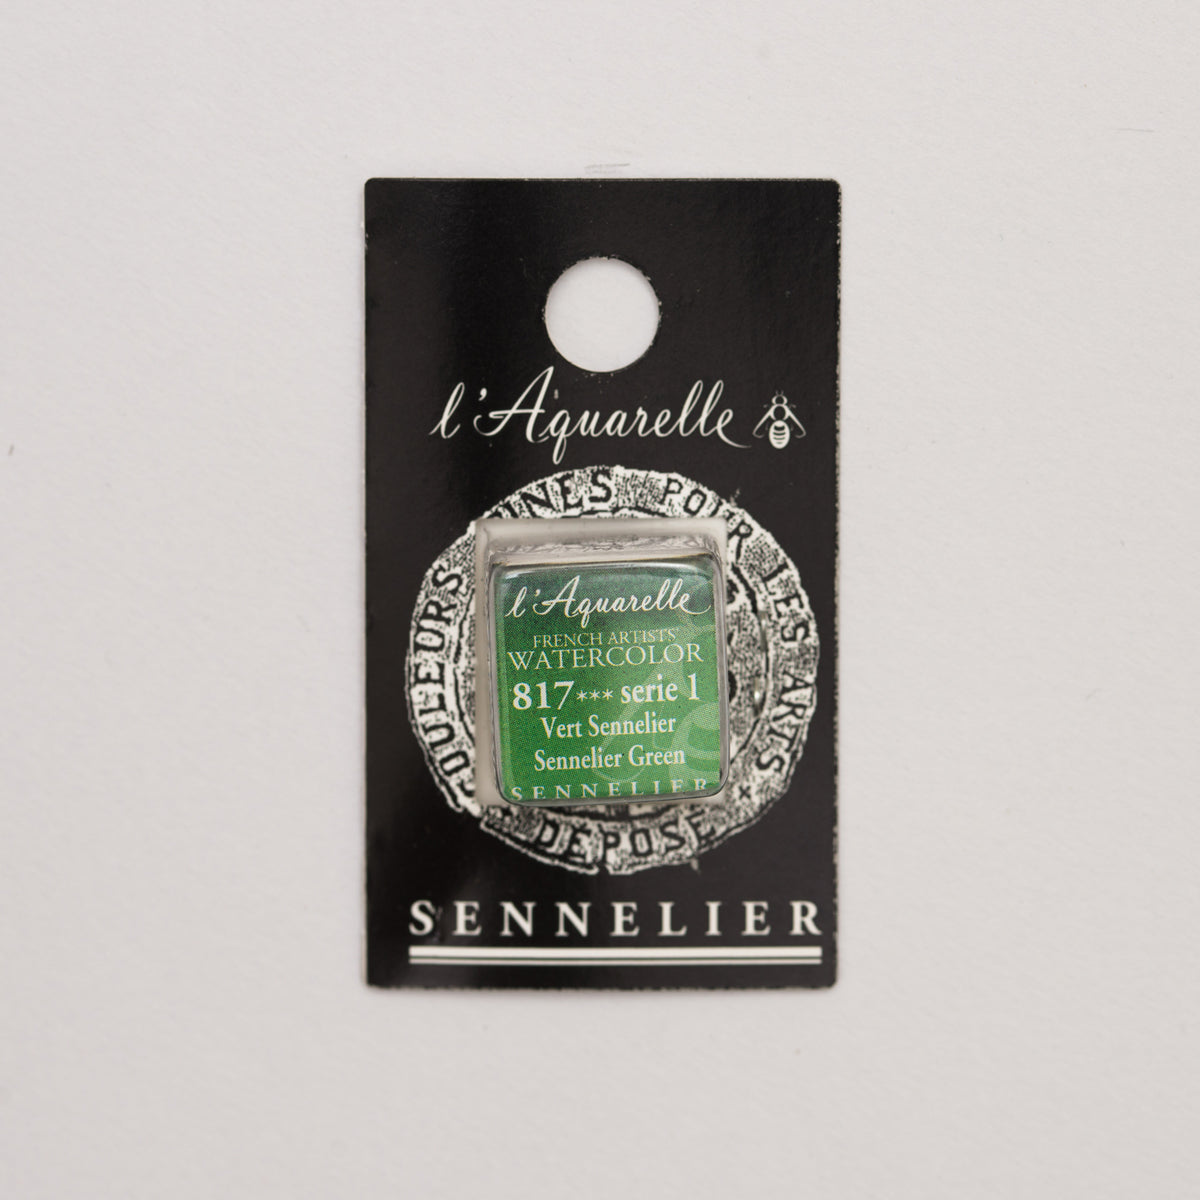 Sennelier l'Aquarelle half pan Sennelier Green S1